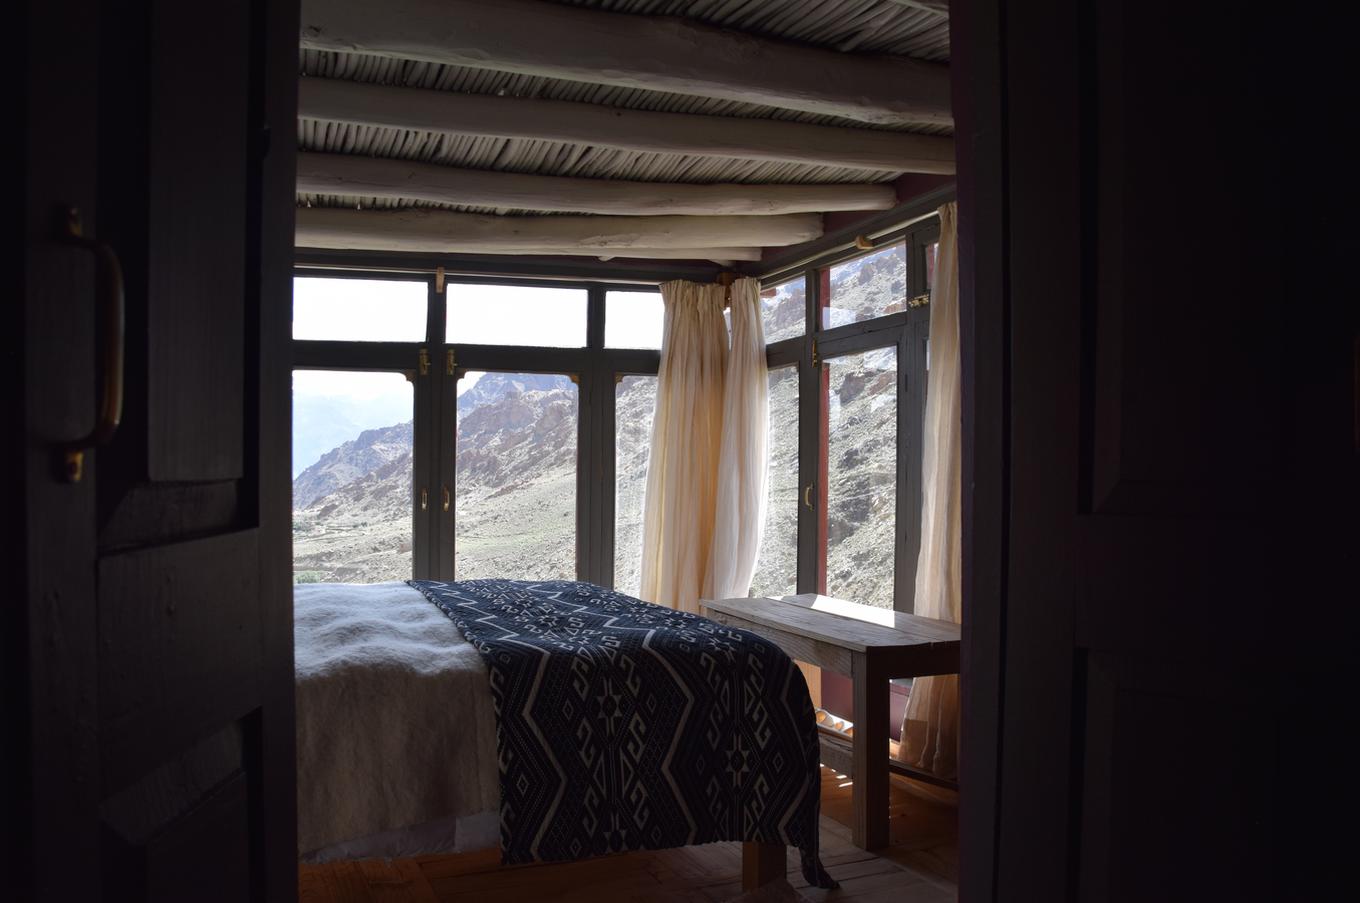 viaje lujo remoto Ladakh India shakti